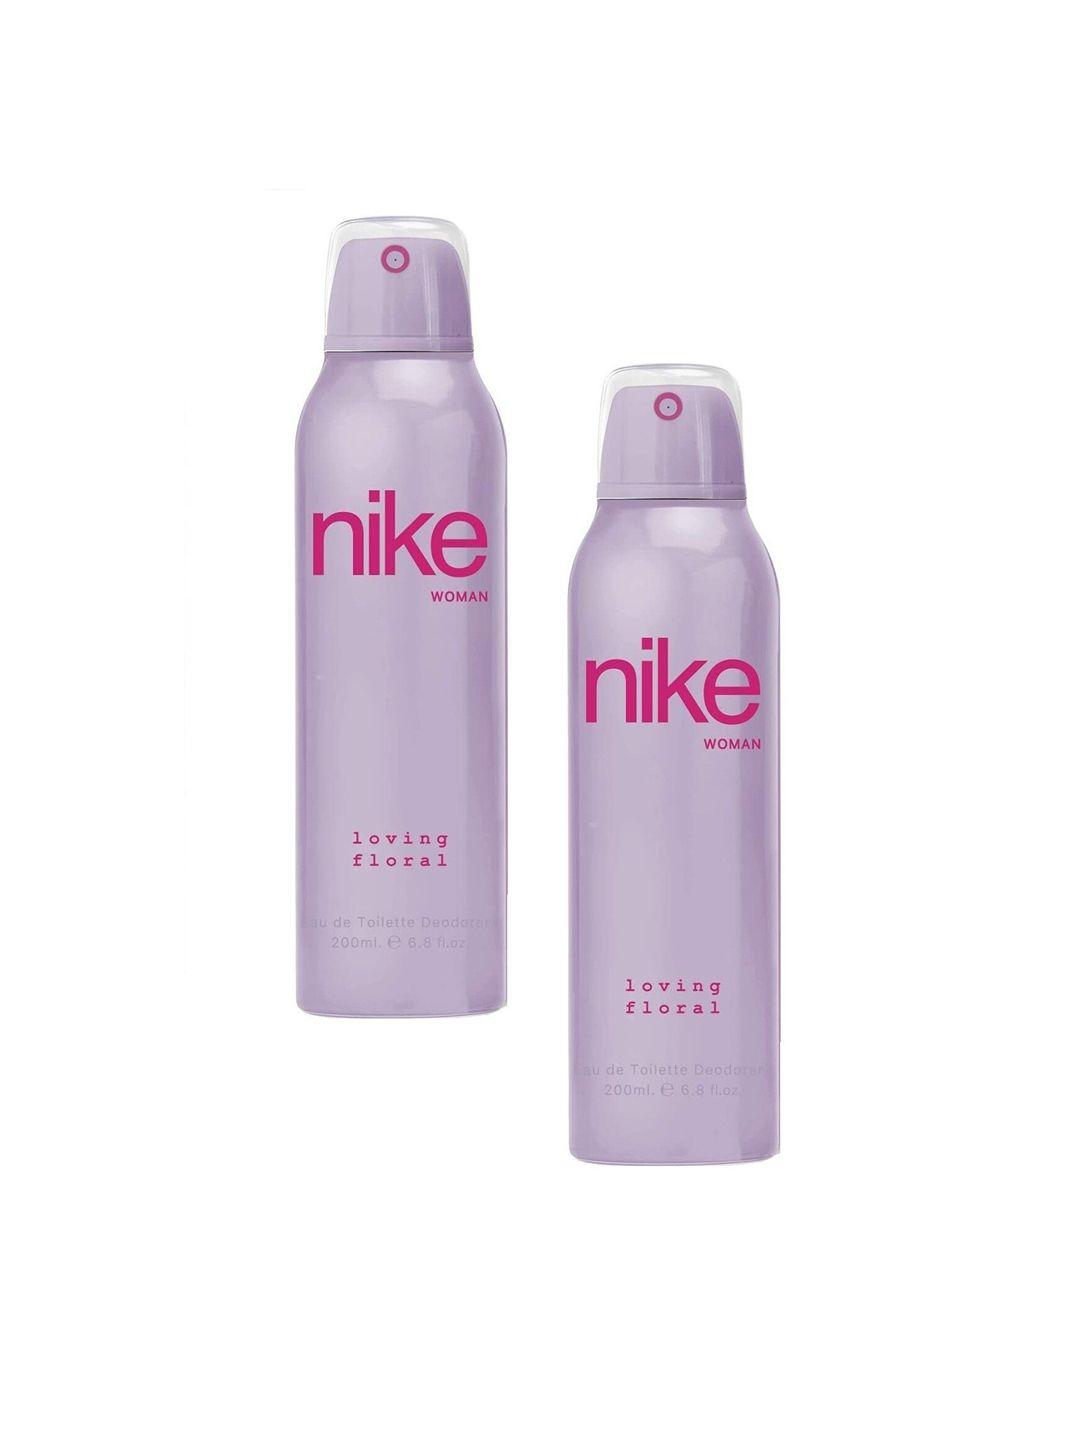 nike pack of 2 woman loving floral deodorant- 200ml each